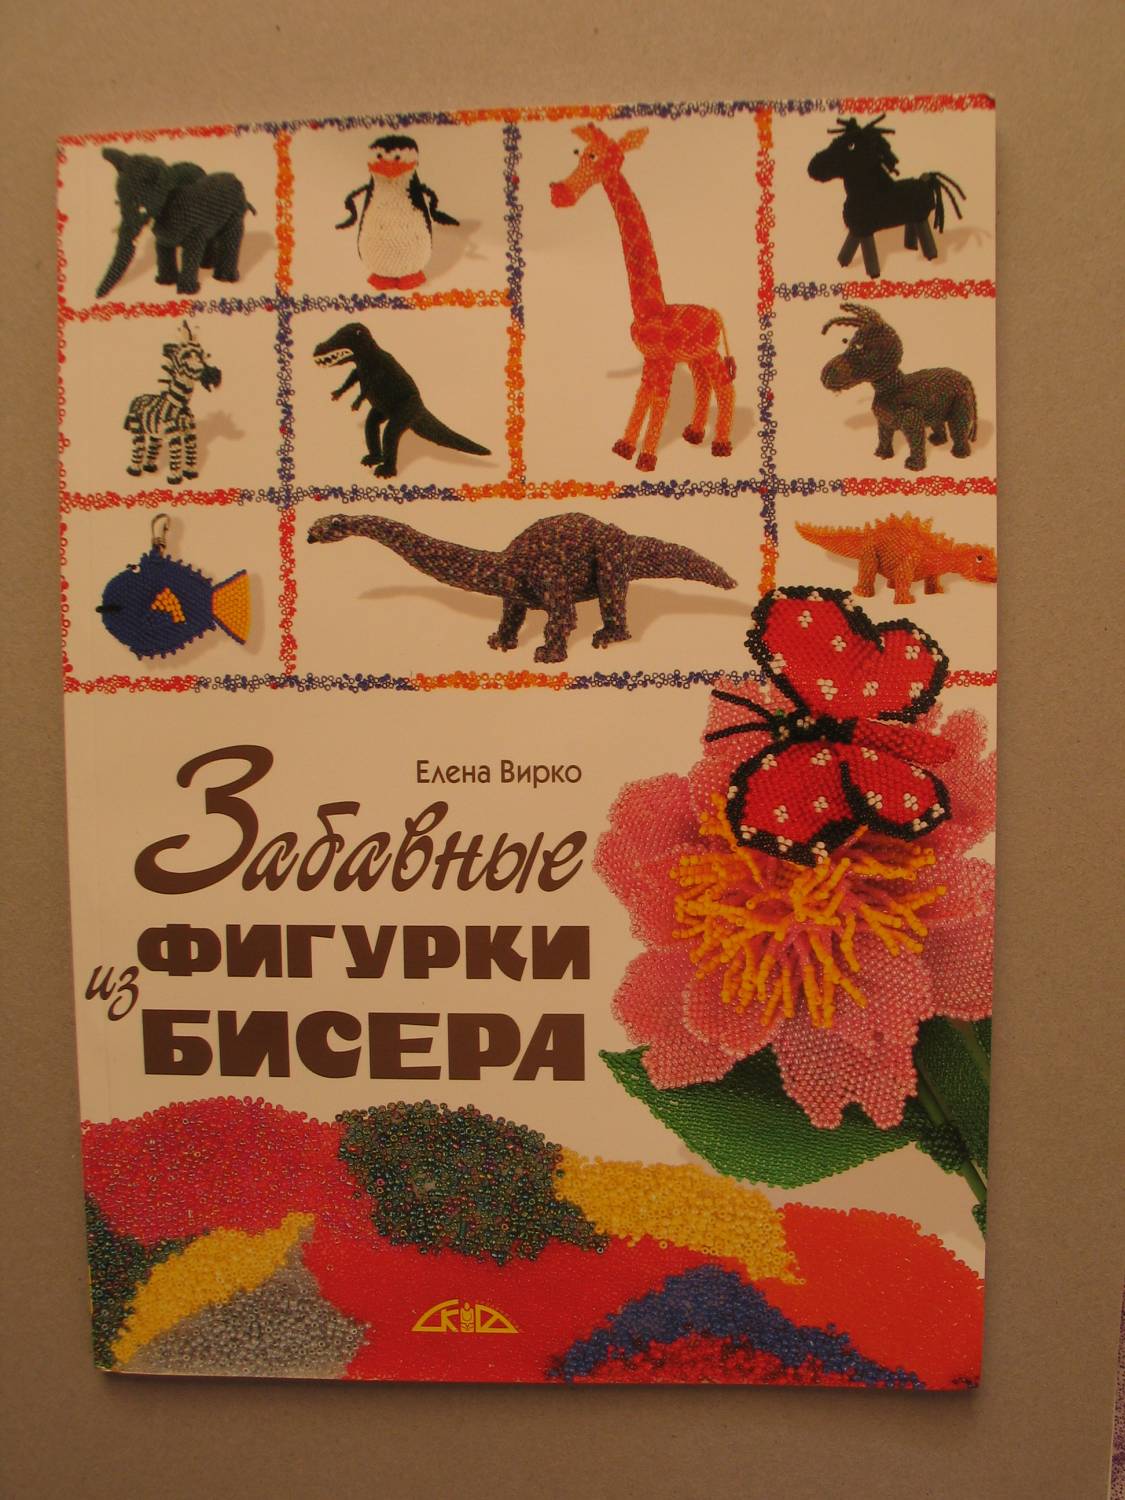 Скачать бесплатно книгу плетение животных из бисера